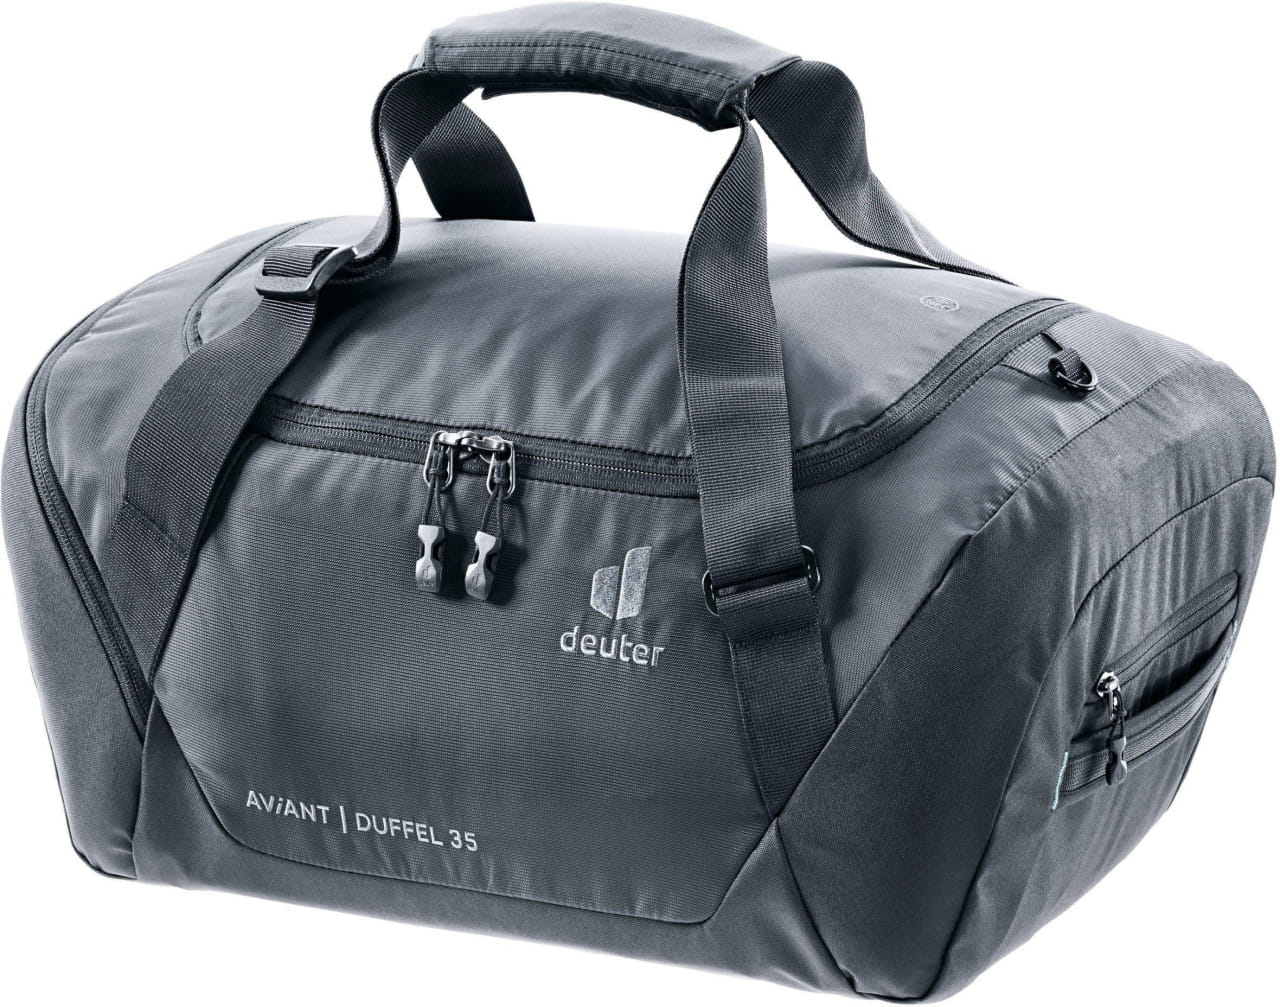 Unisexová sportovní taška Deuter AViANT Duffel 35